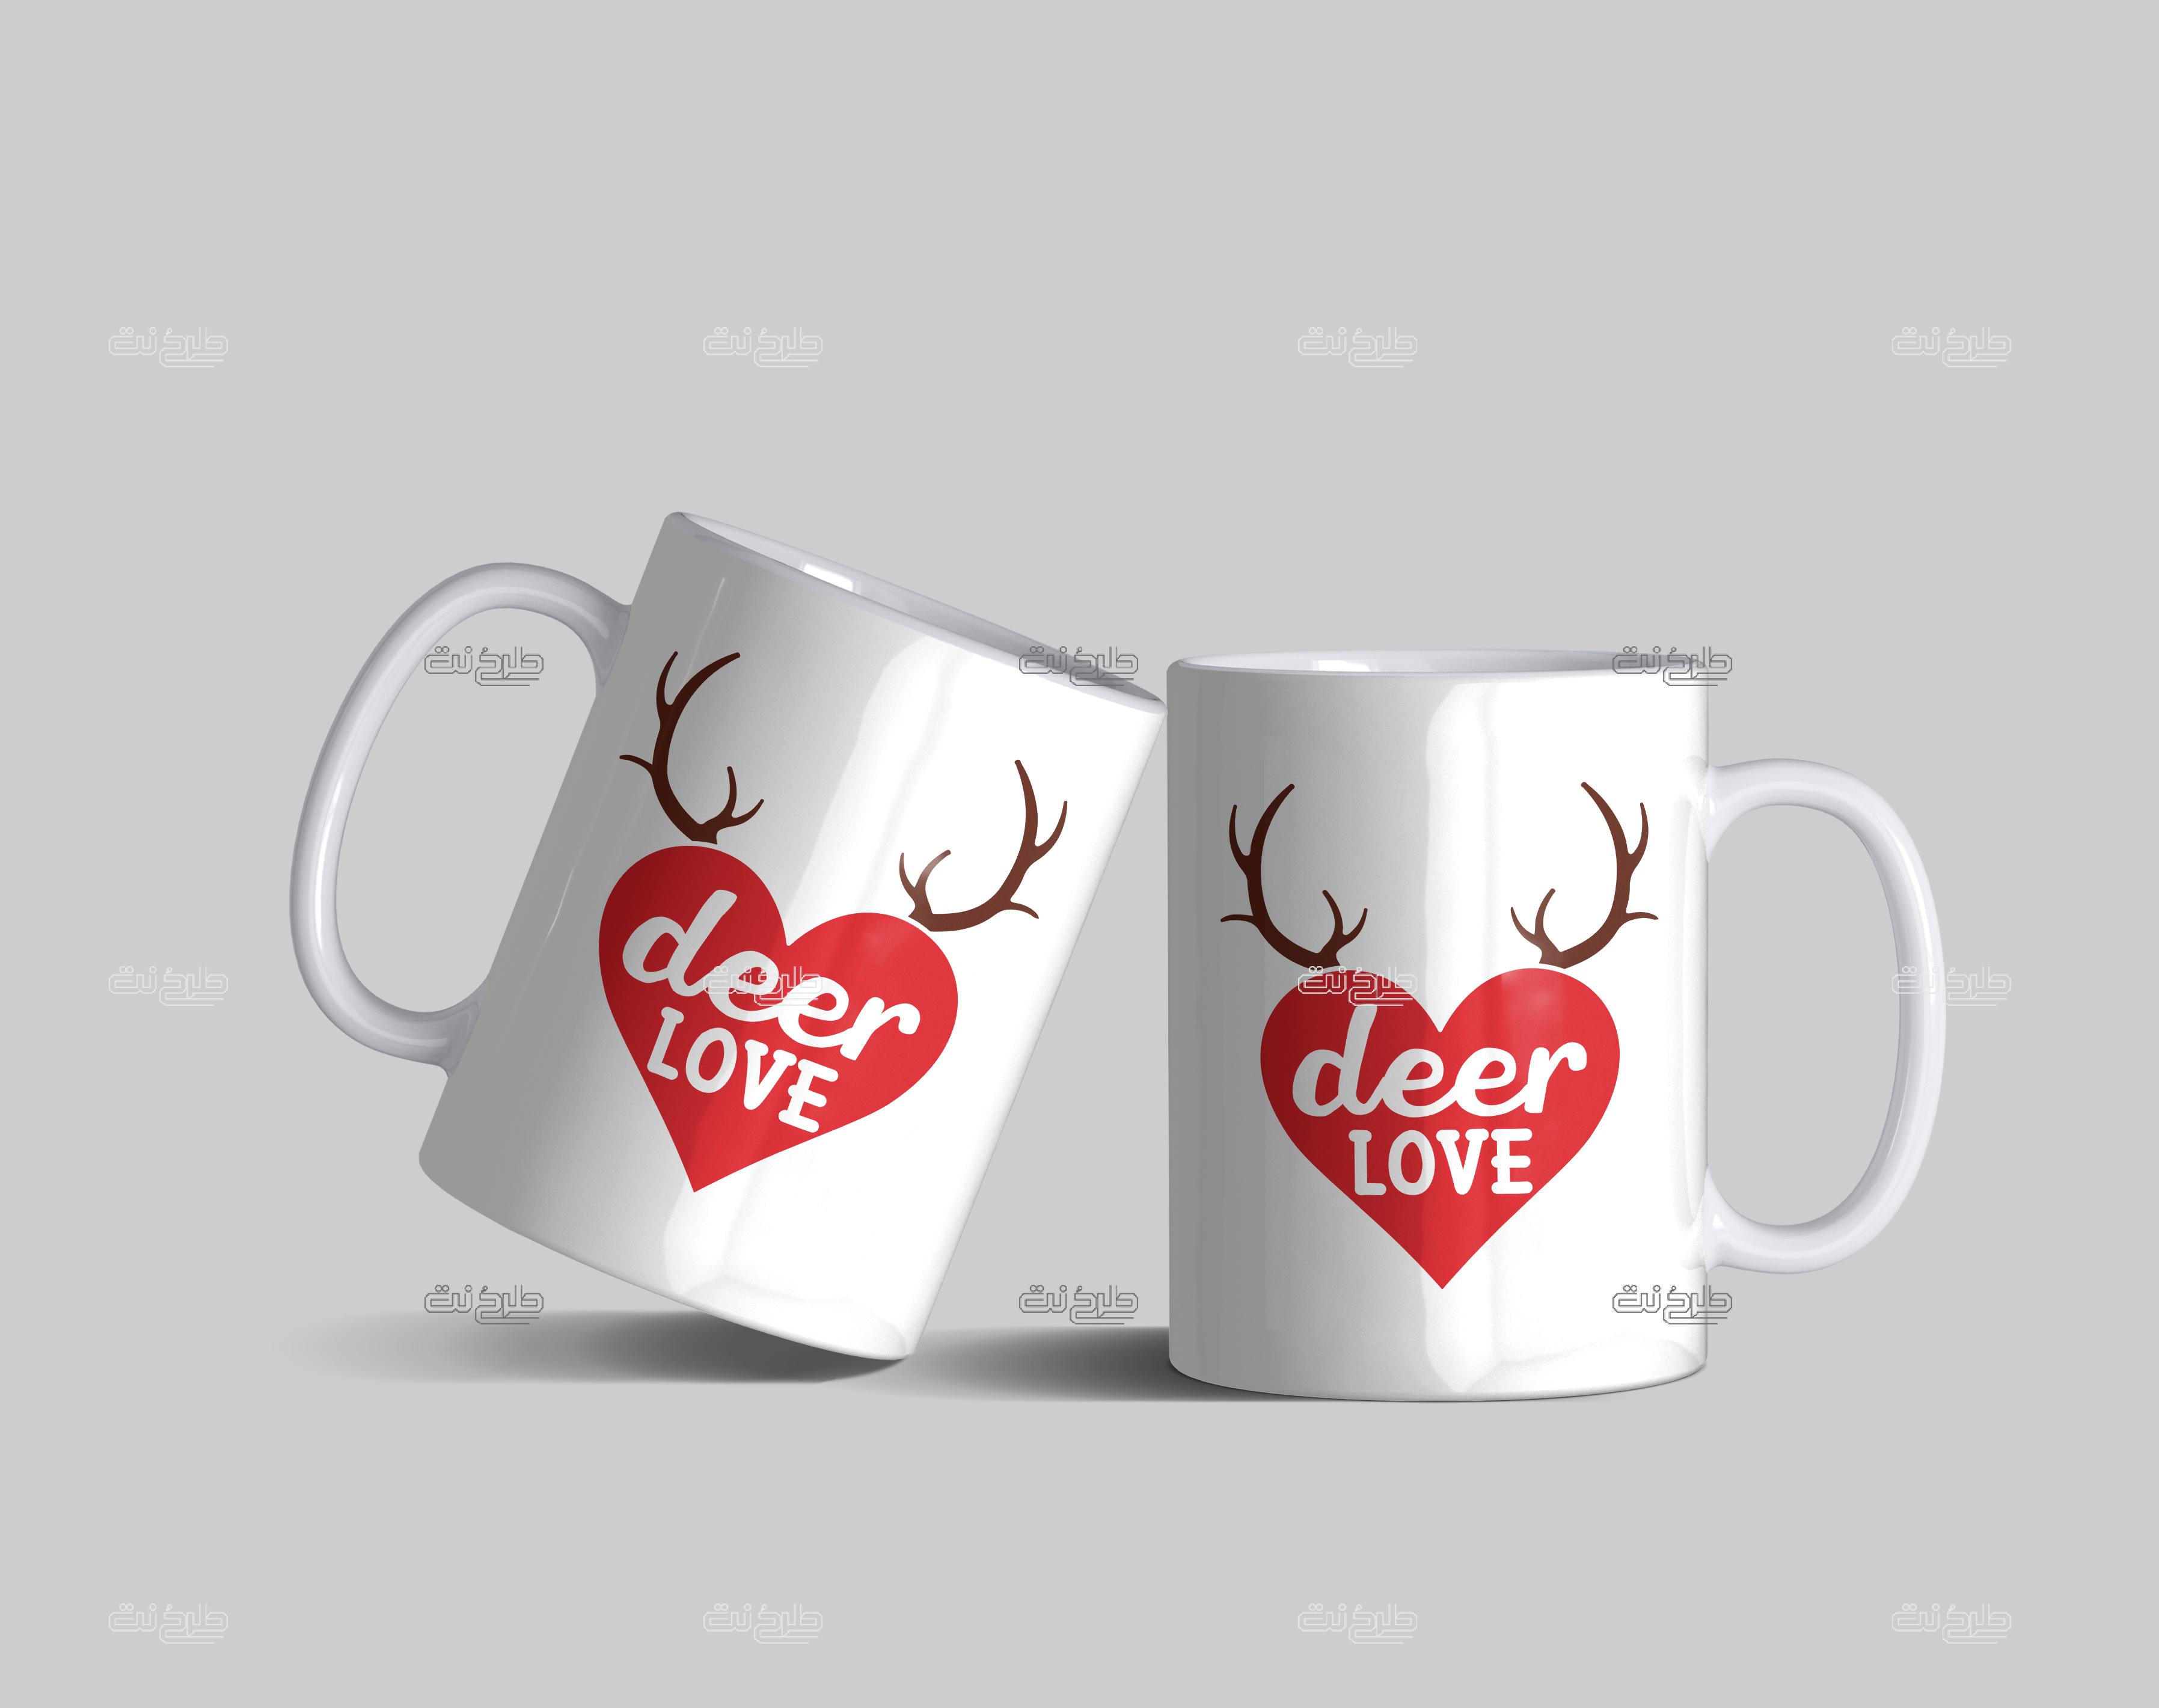 دانلود طرح لایه باز لیوان طرح قلب عاشقانه با متن "deer LOVE"